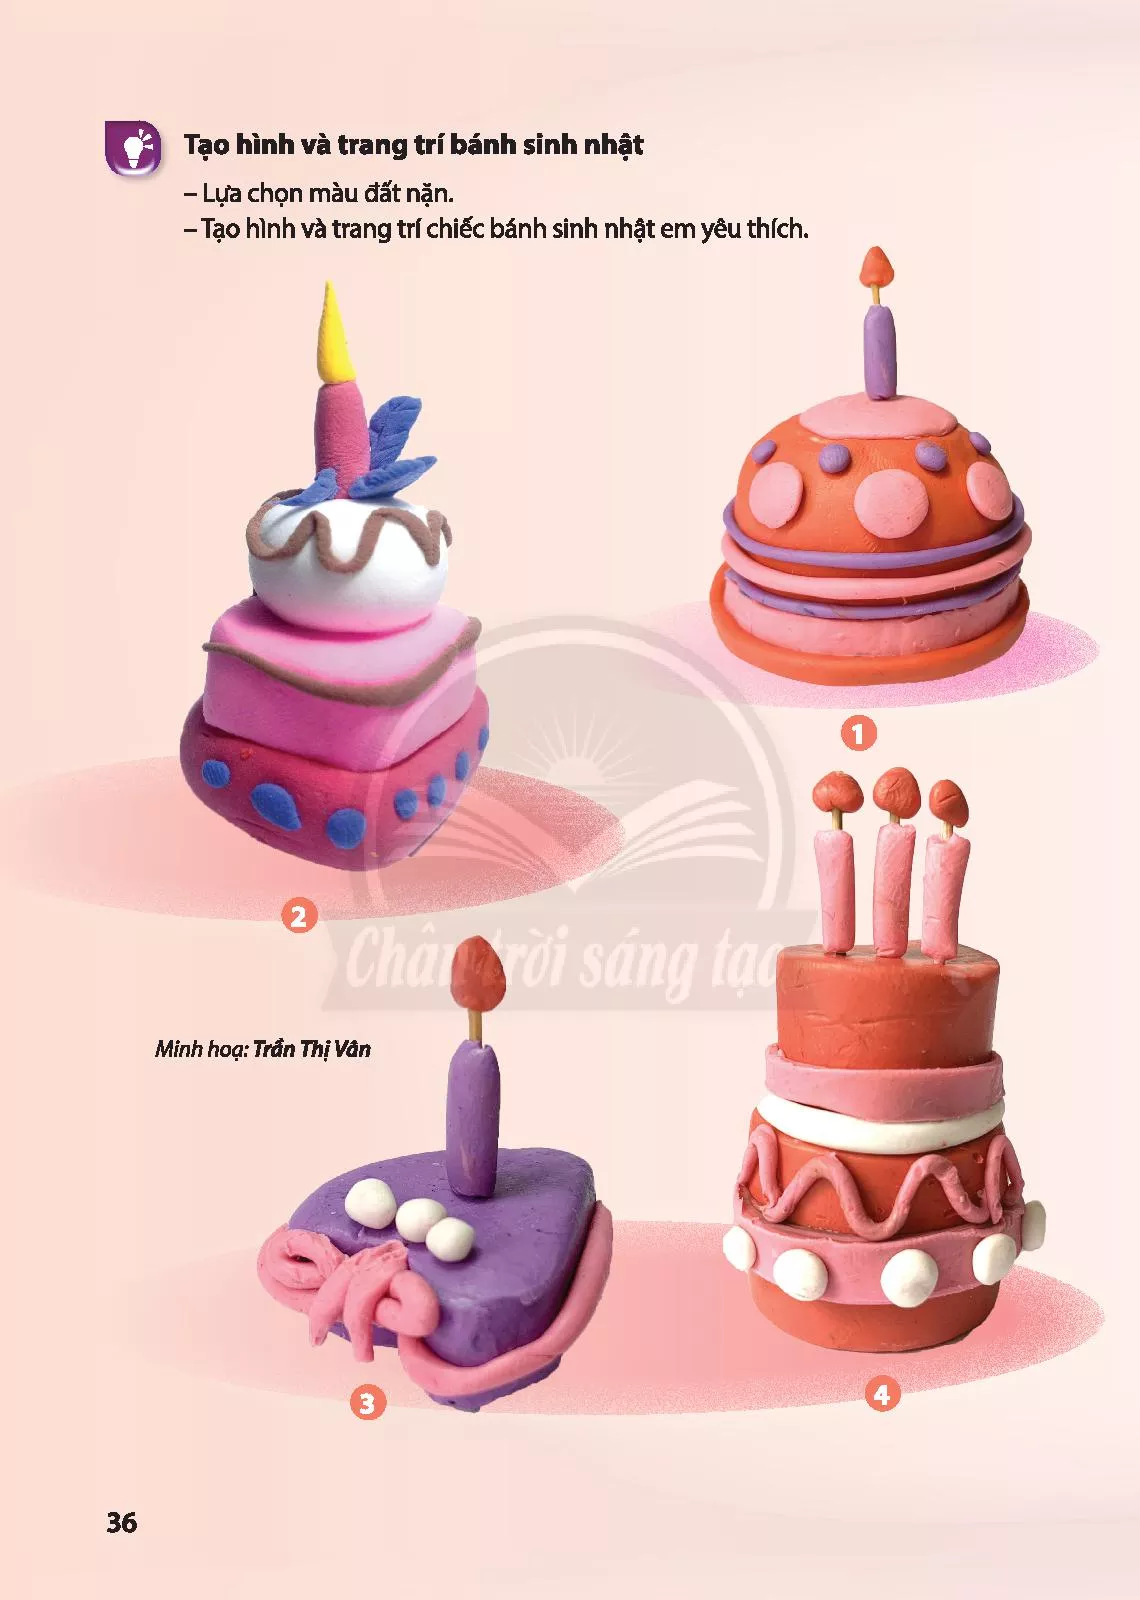 Bài 2: Chiếc bánh sinh nhật